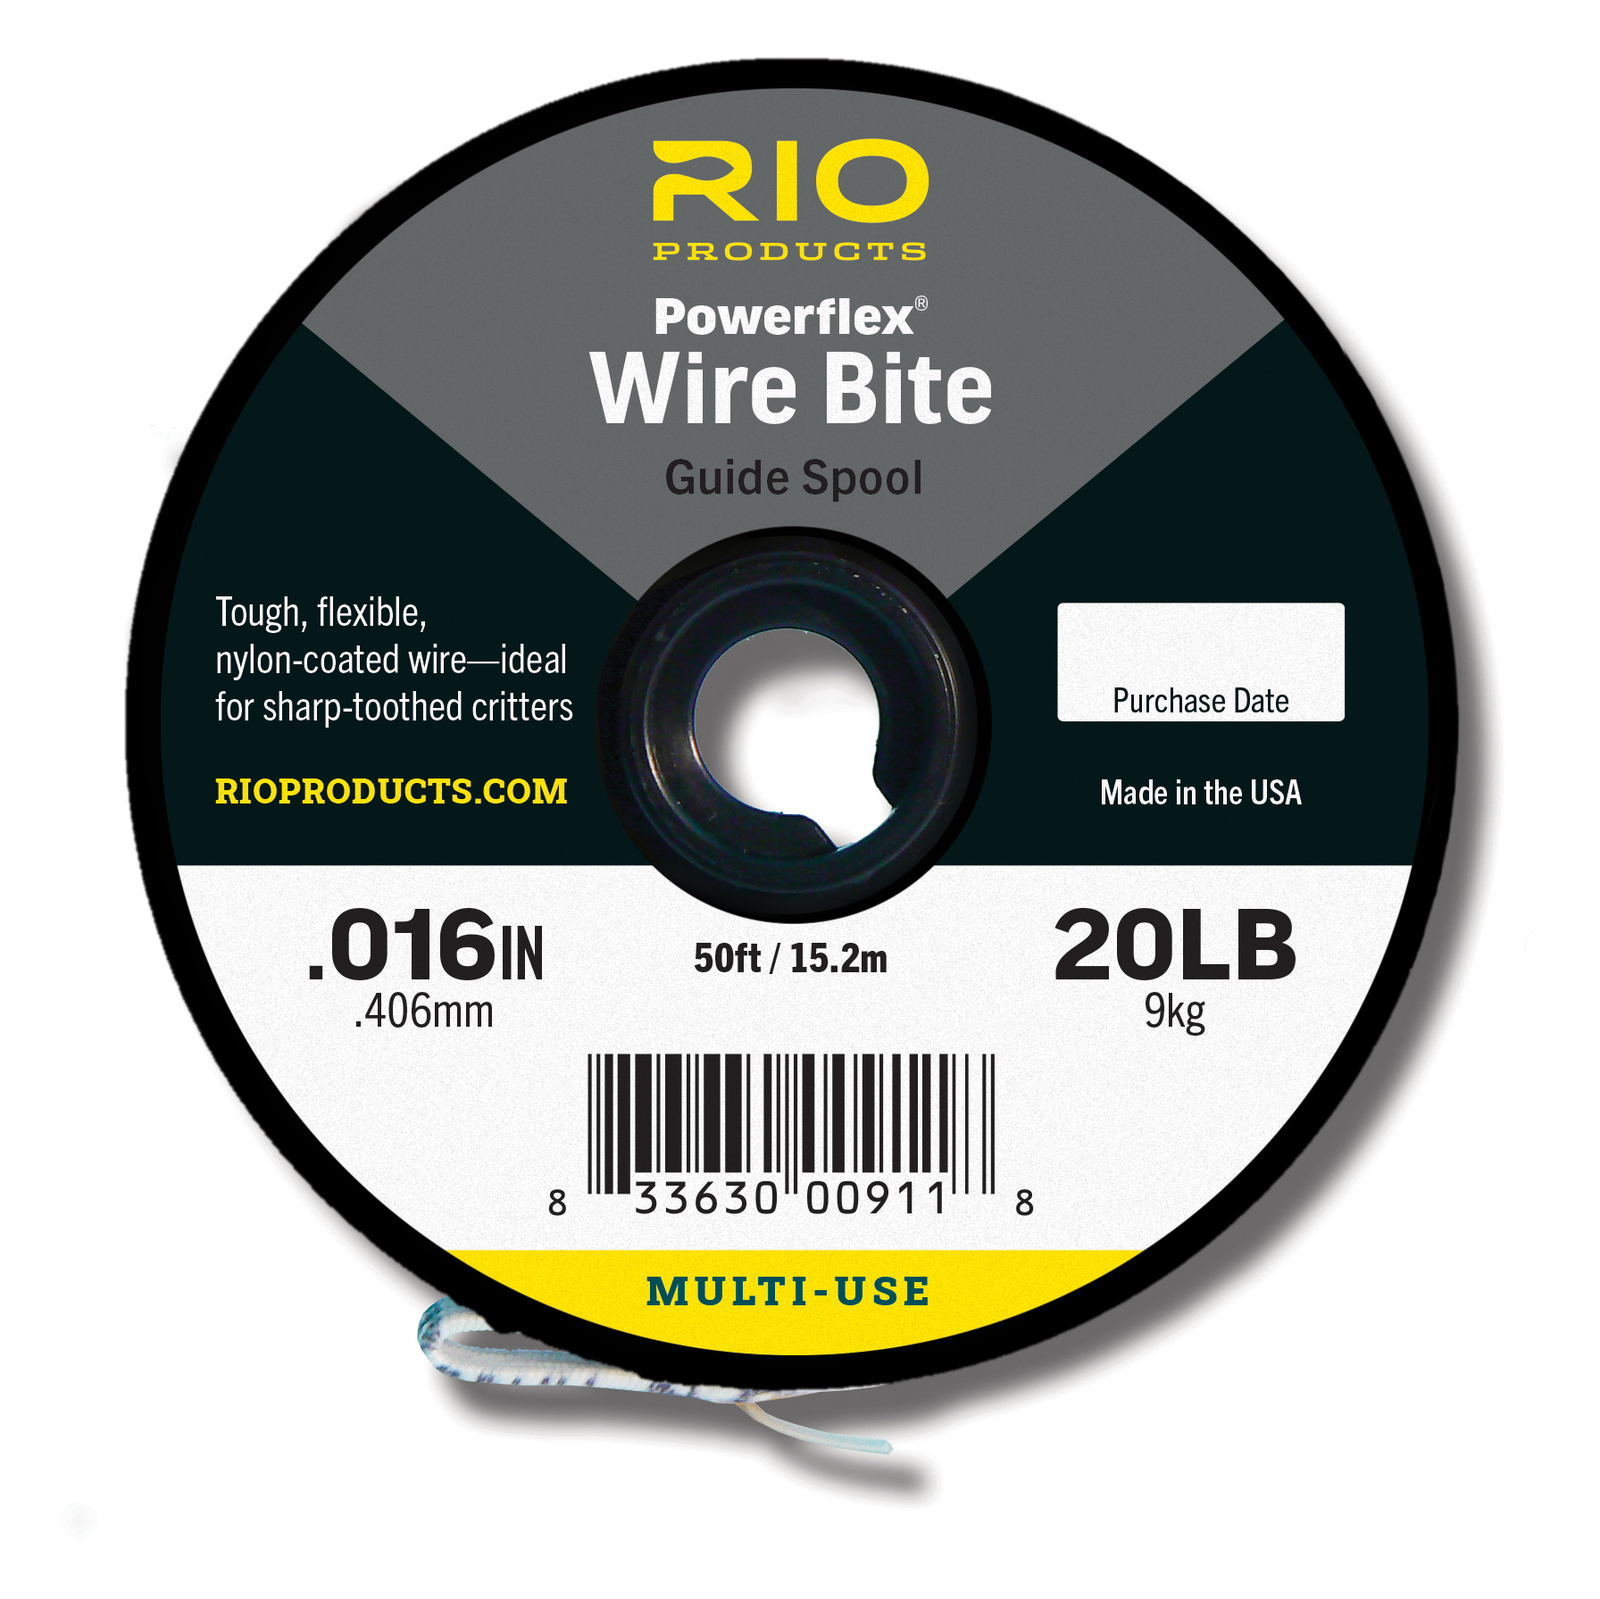 Rio Saltwater Powerflex Wire Bite Tippet